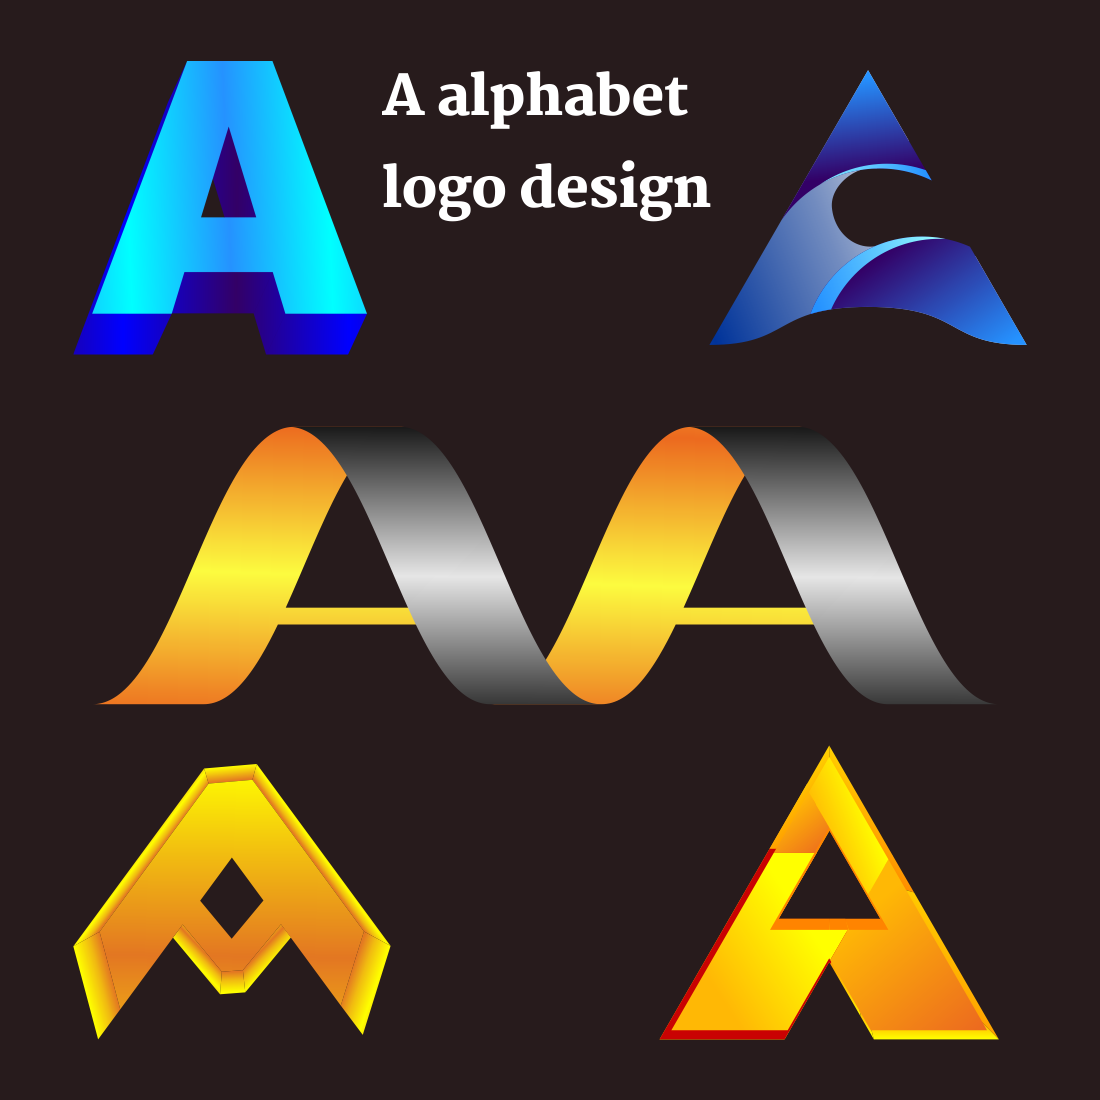 a alphabet logo design 977